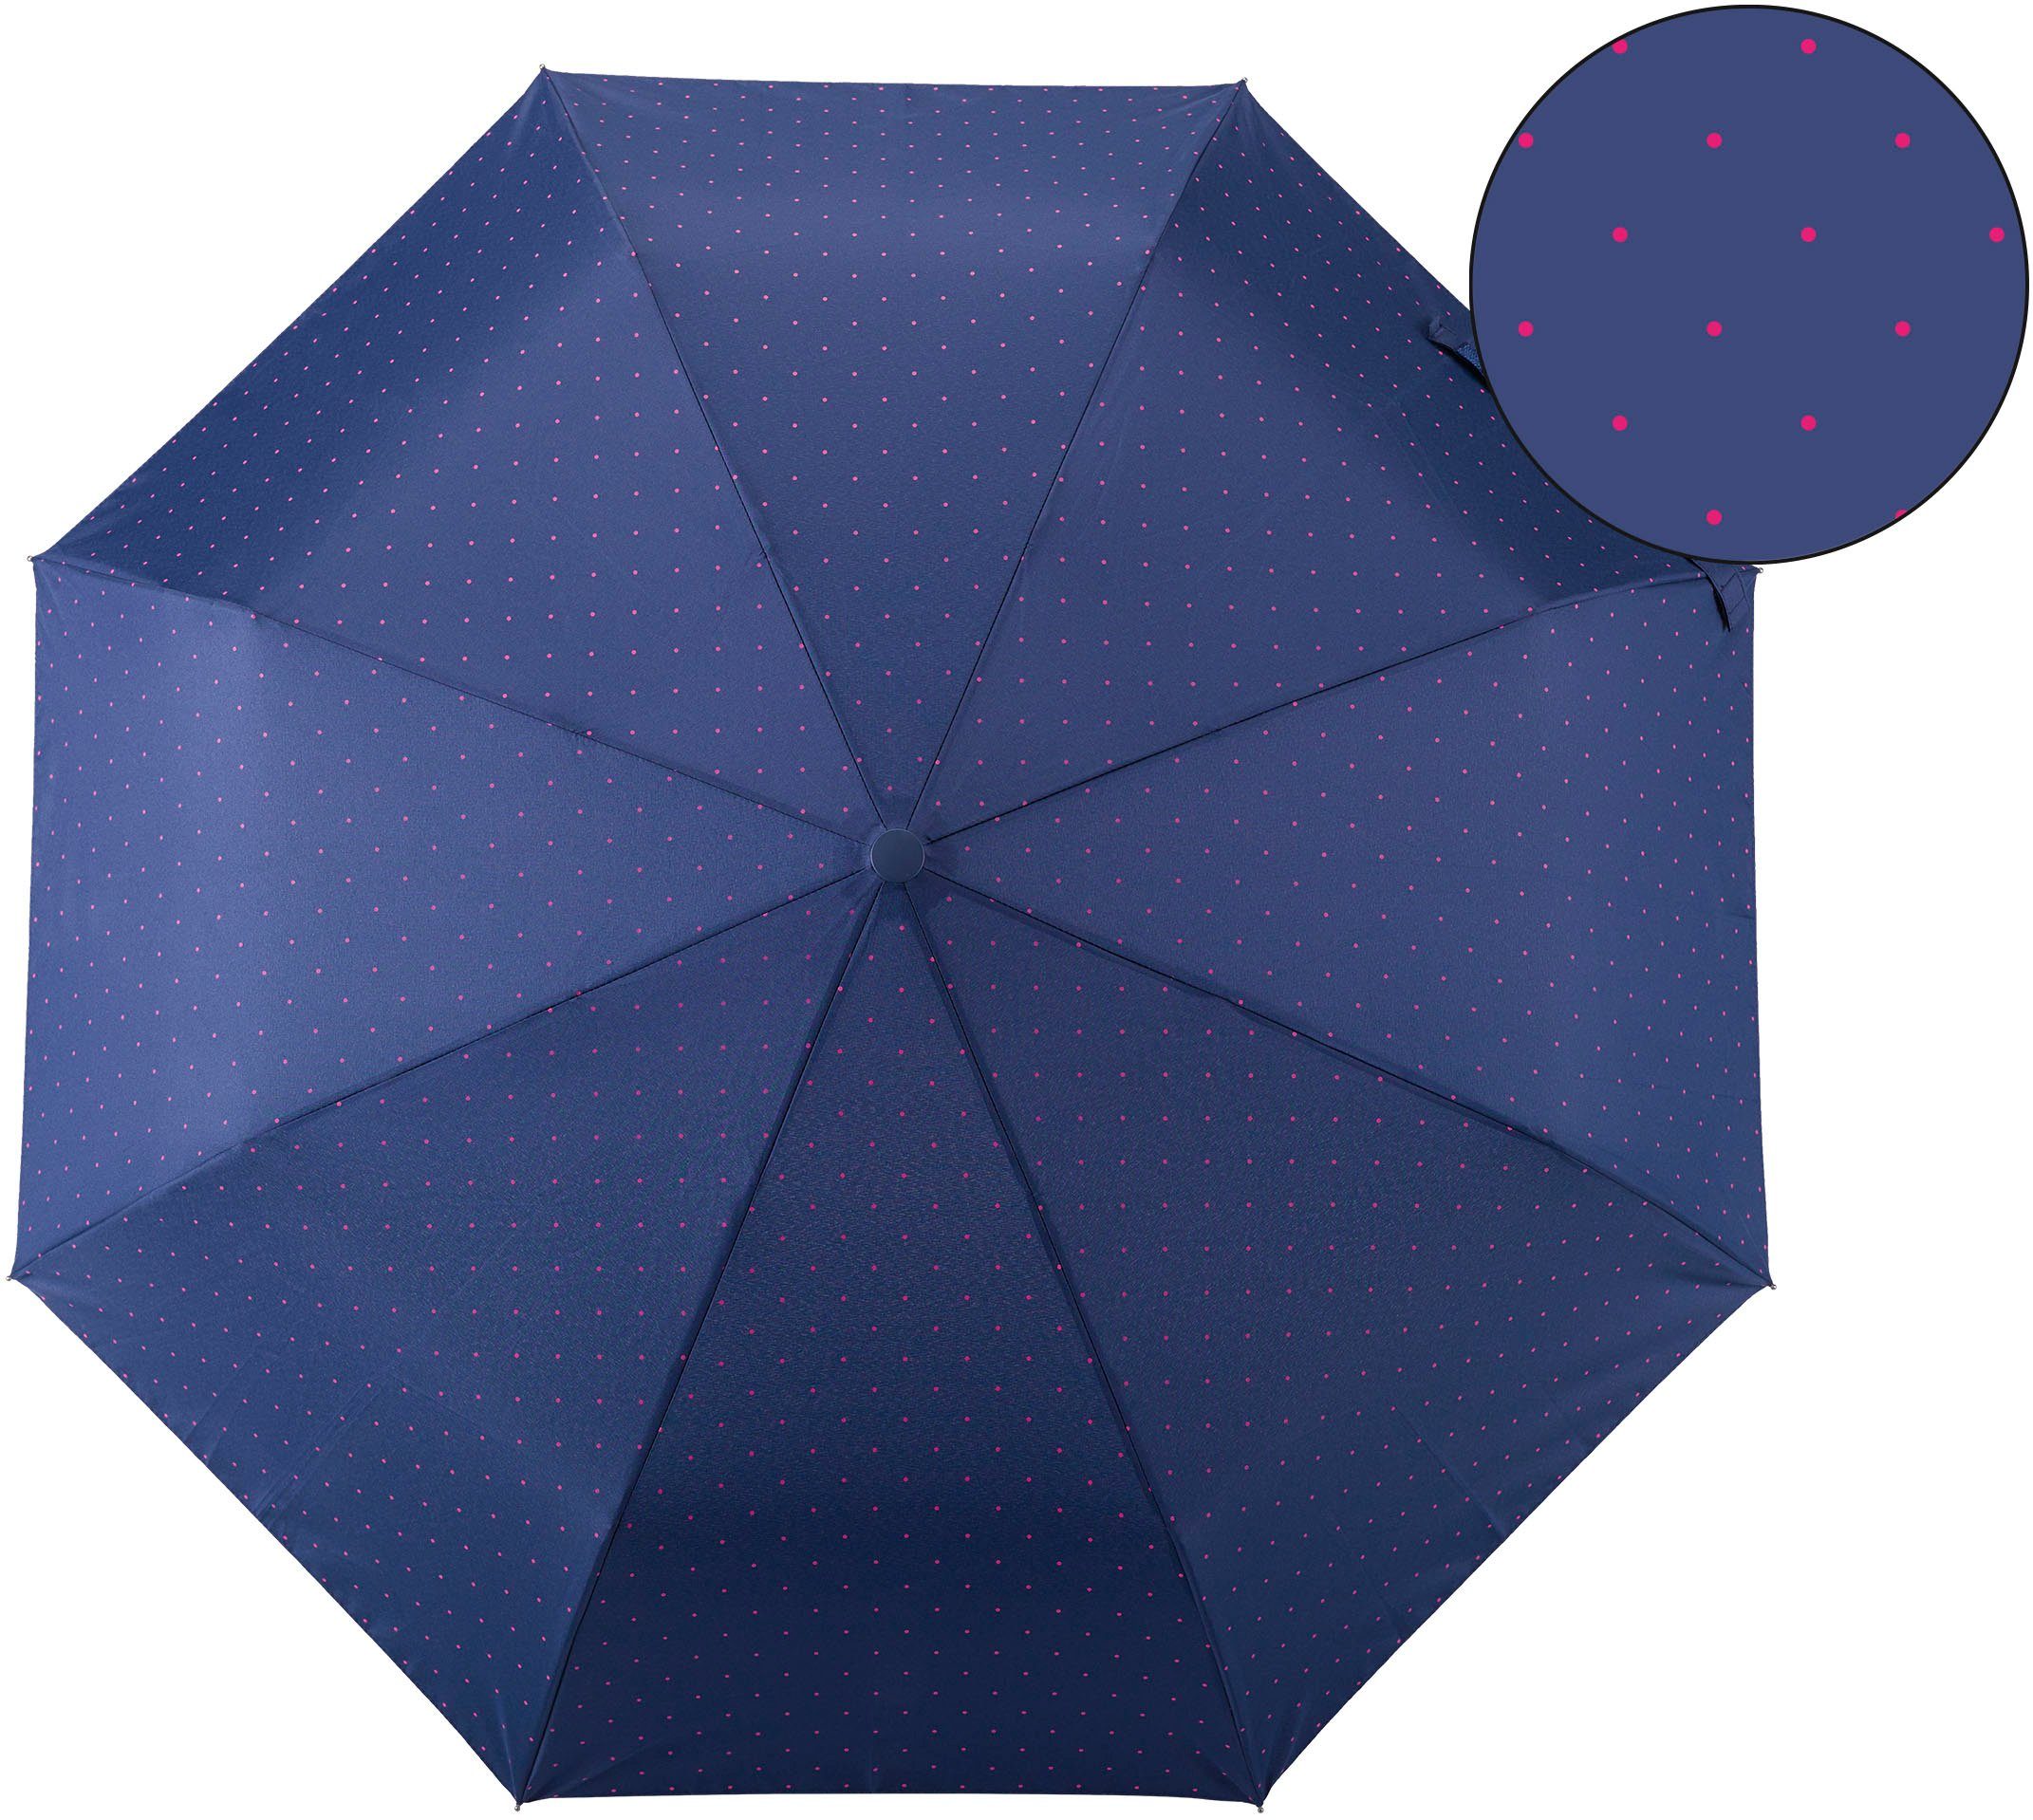 Umwelt-Taschenschirm, Taschenregenschirm EuroSCHIRM® marine, Punkte pink